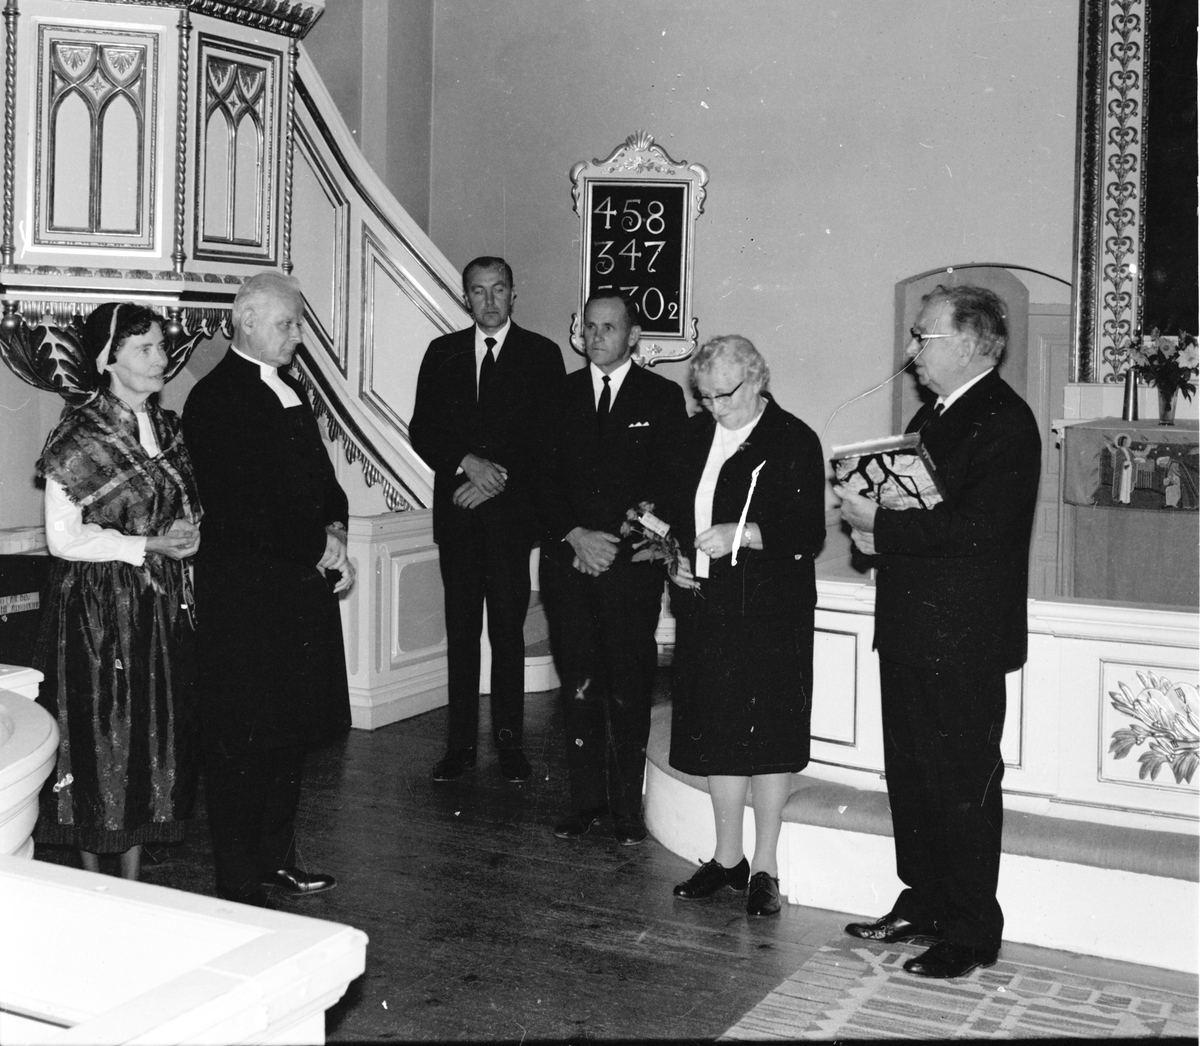 Undersvik,
Blomqvists avtackas i Undersviks kyrka,
Maj 1970